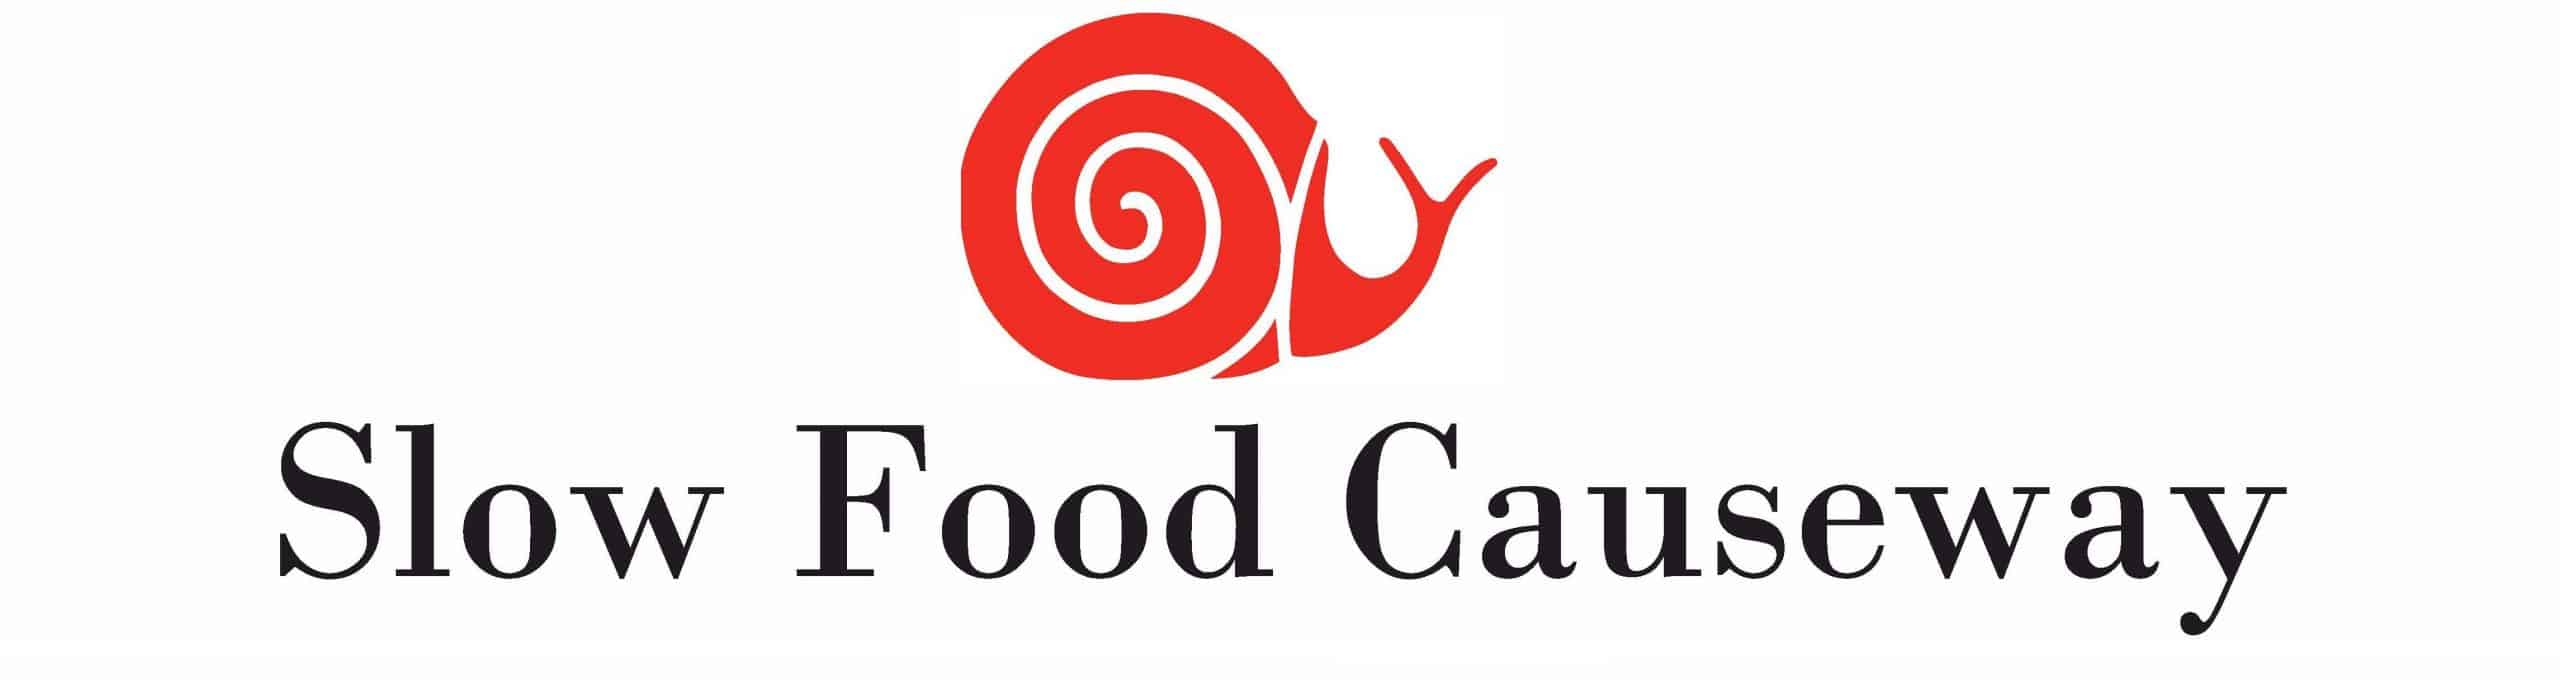 slow food causeway logo